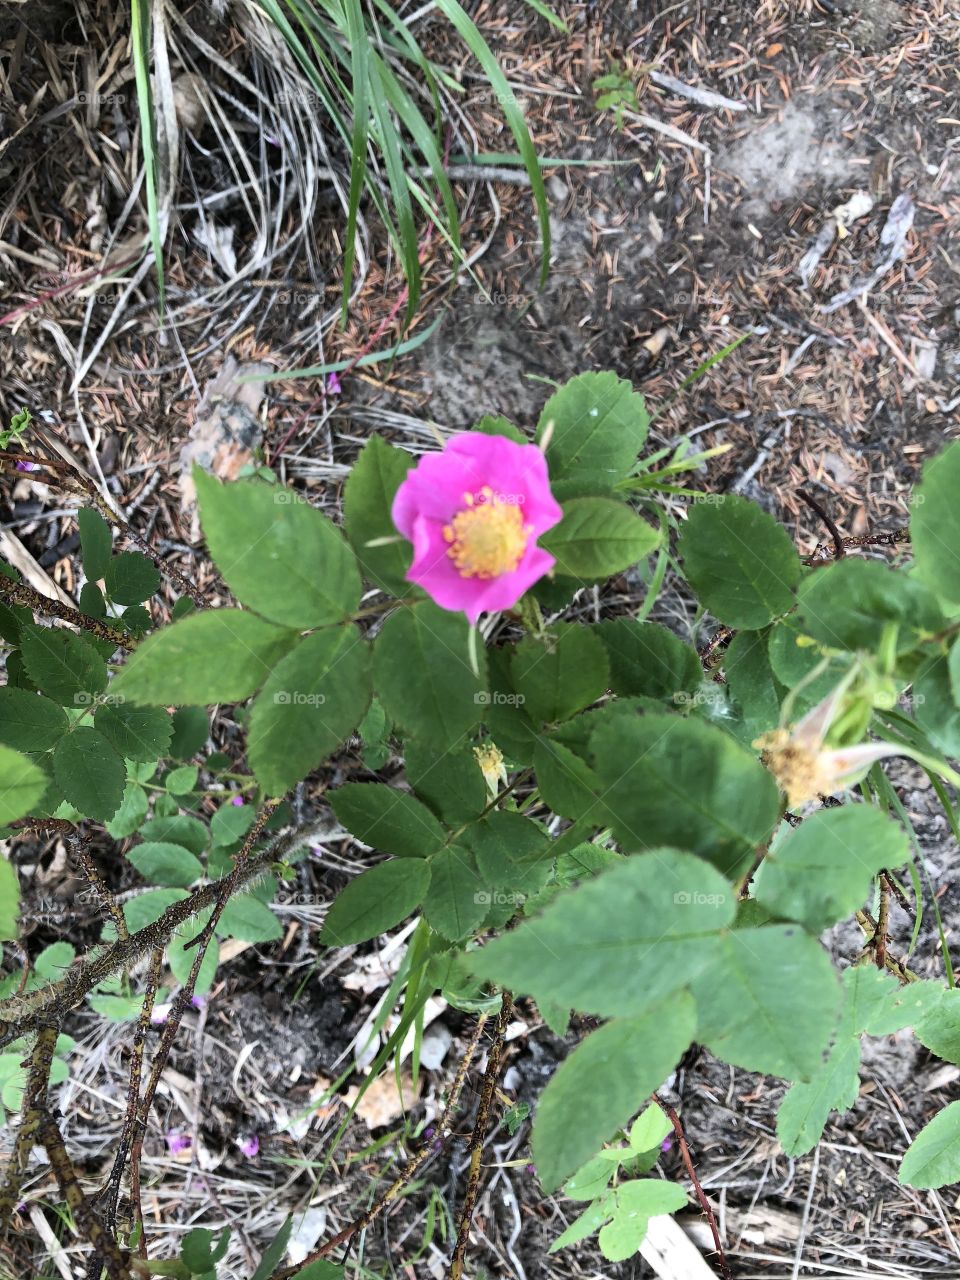 Alberta Wild Rose part 2 